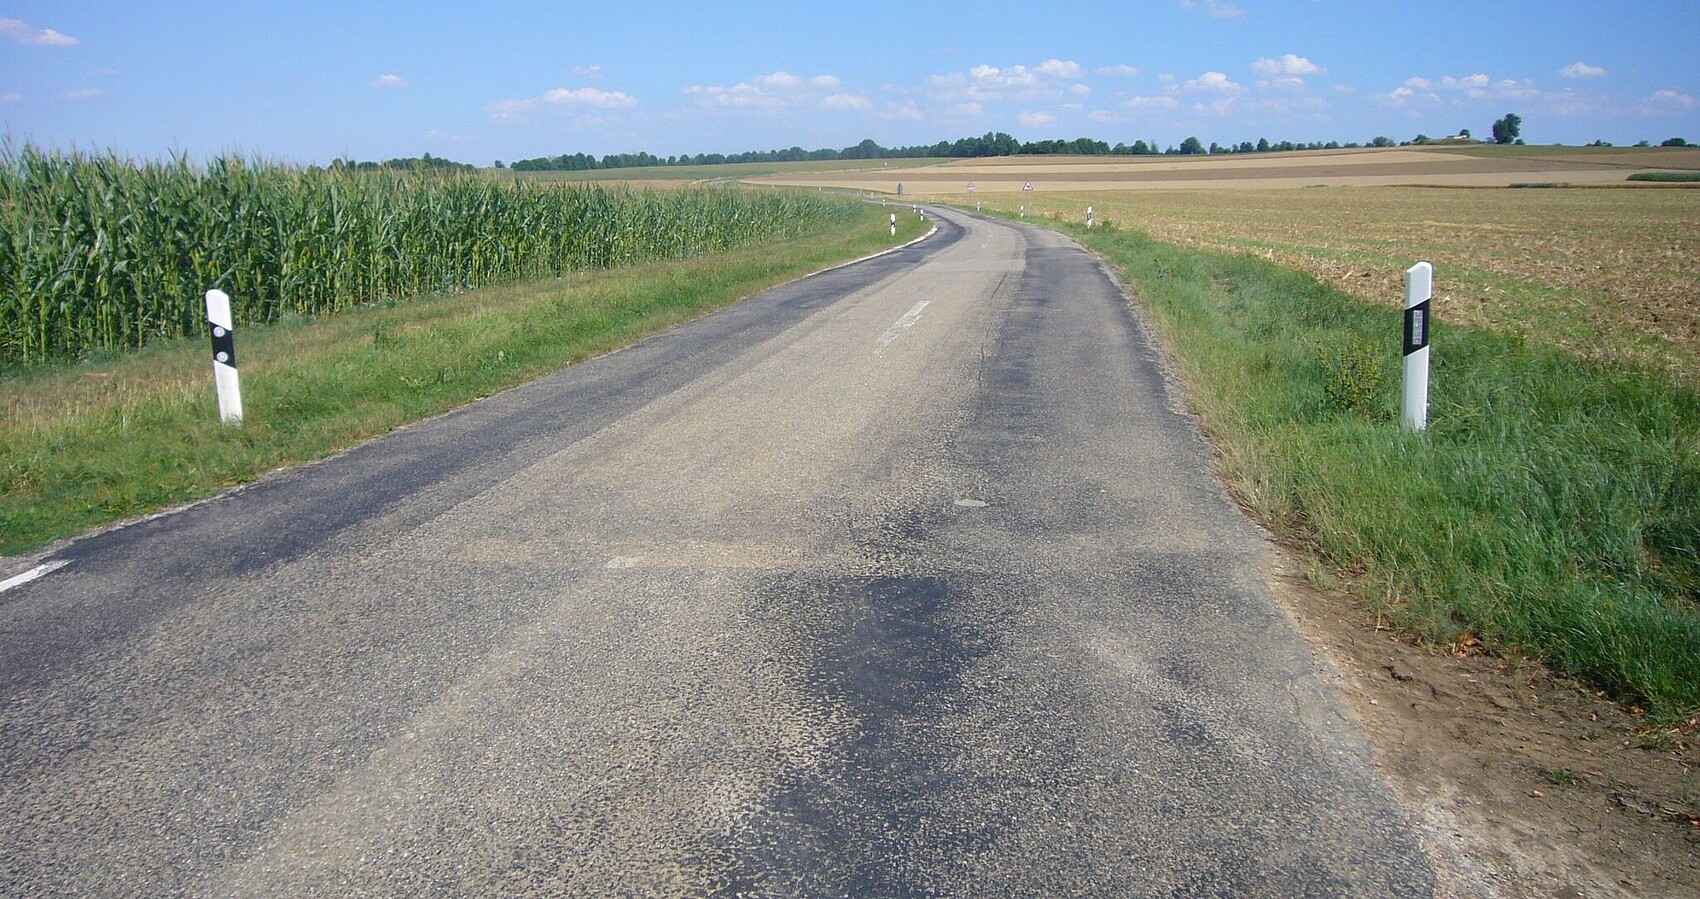 Blick auf die L 240 mit Leitpfosten; links von der Straße ein Maisfeld und rechts davon ein geerntetes Feld; leicht bewölkter blauer Himmel